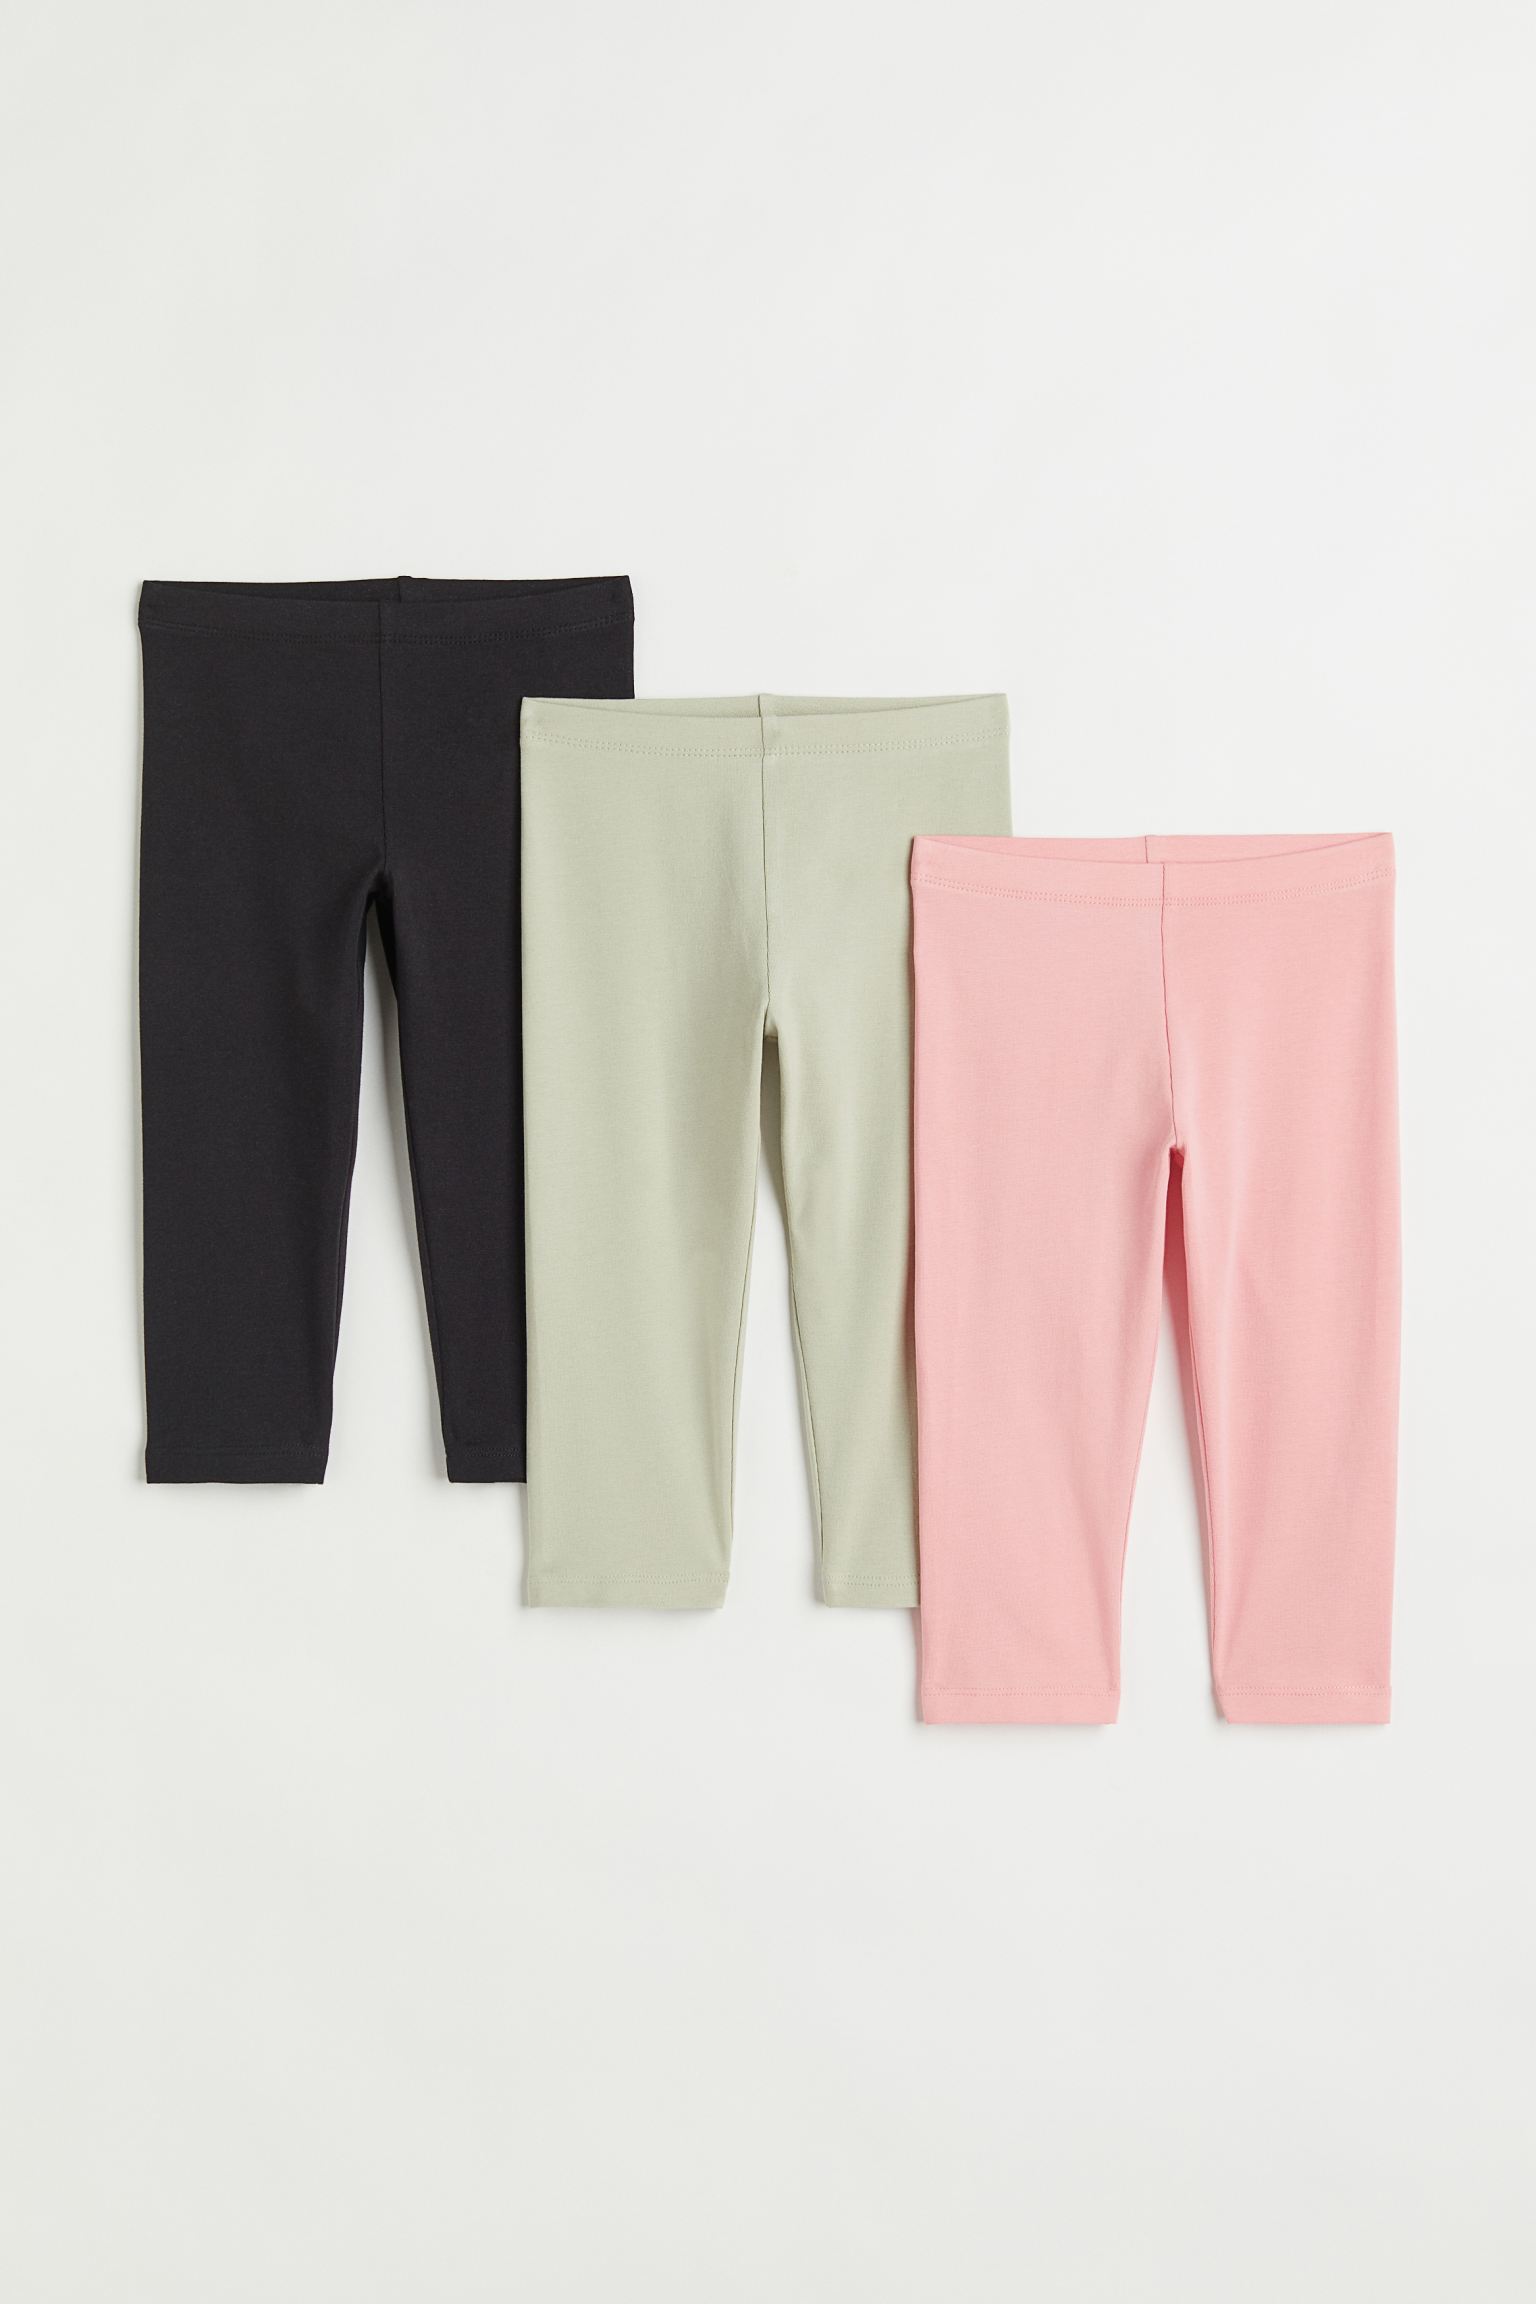 Комплект легинсов H&M для девочек розовый, черный, зеленый-013 размер 92, 916397013, 3 шт.